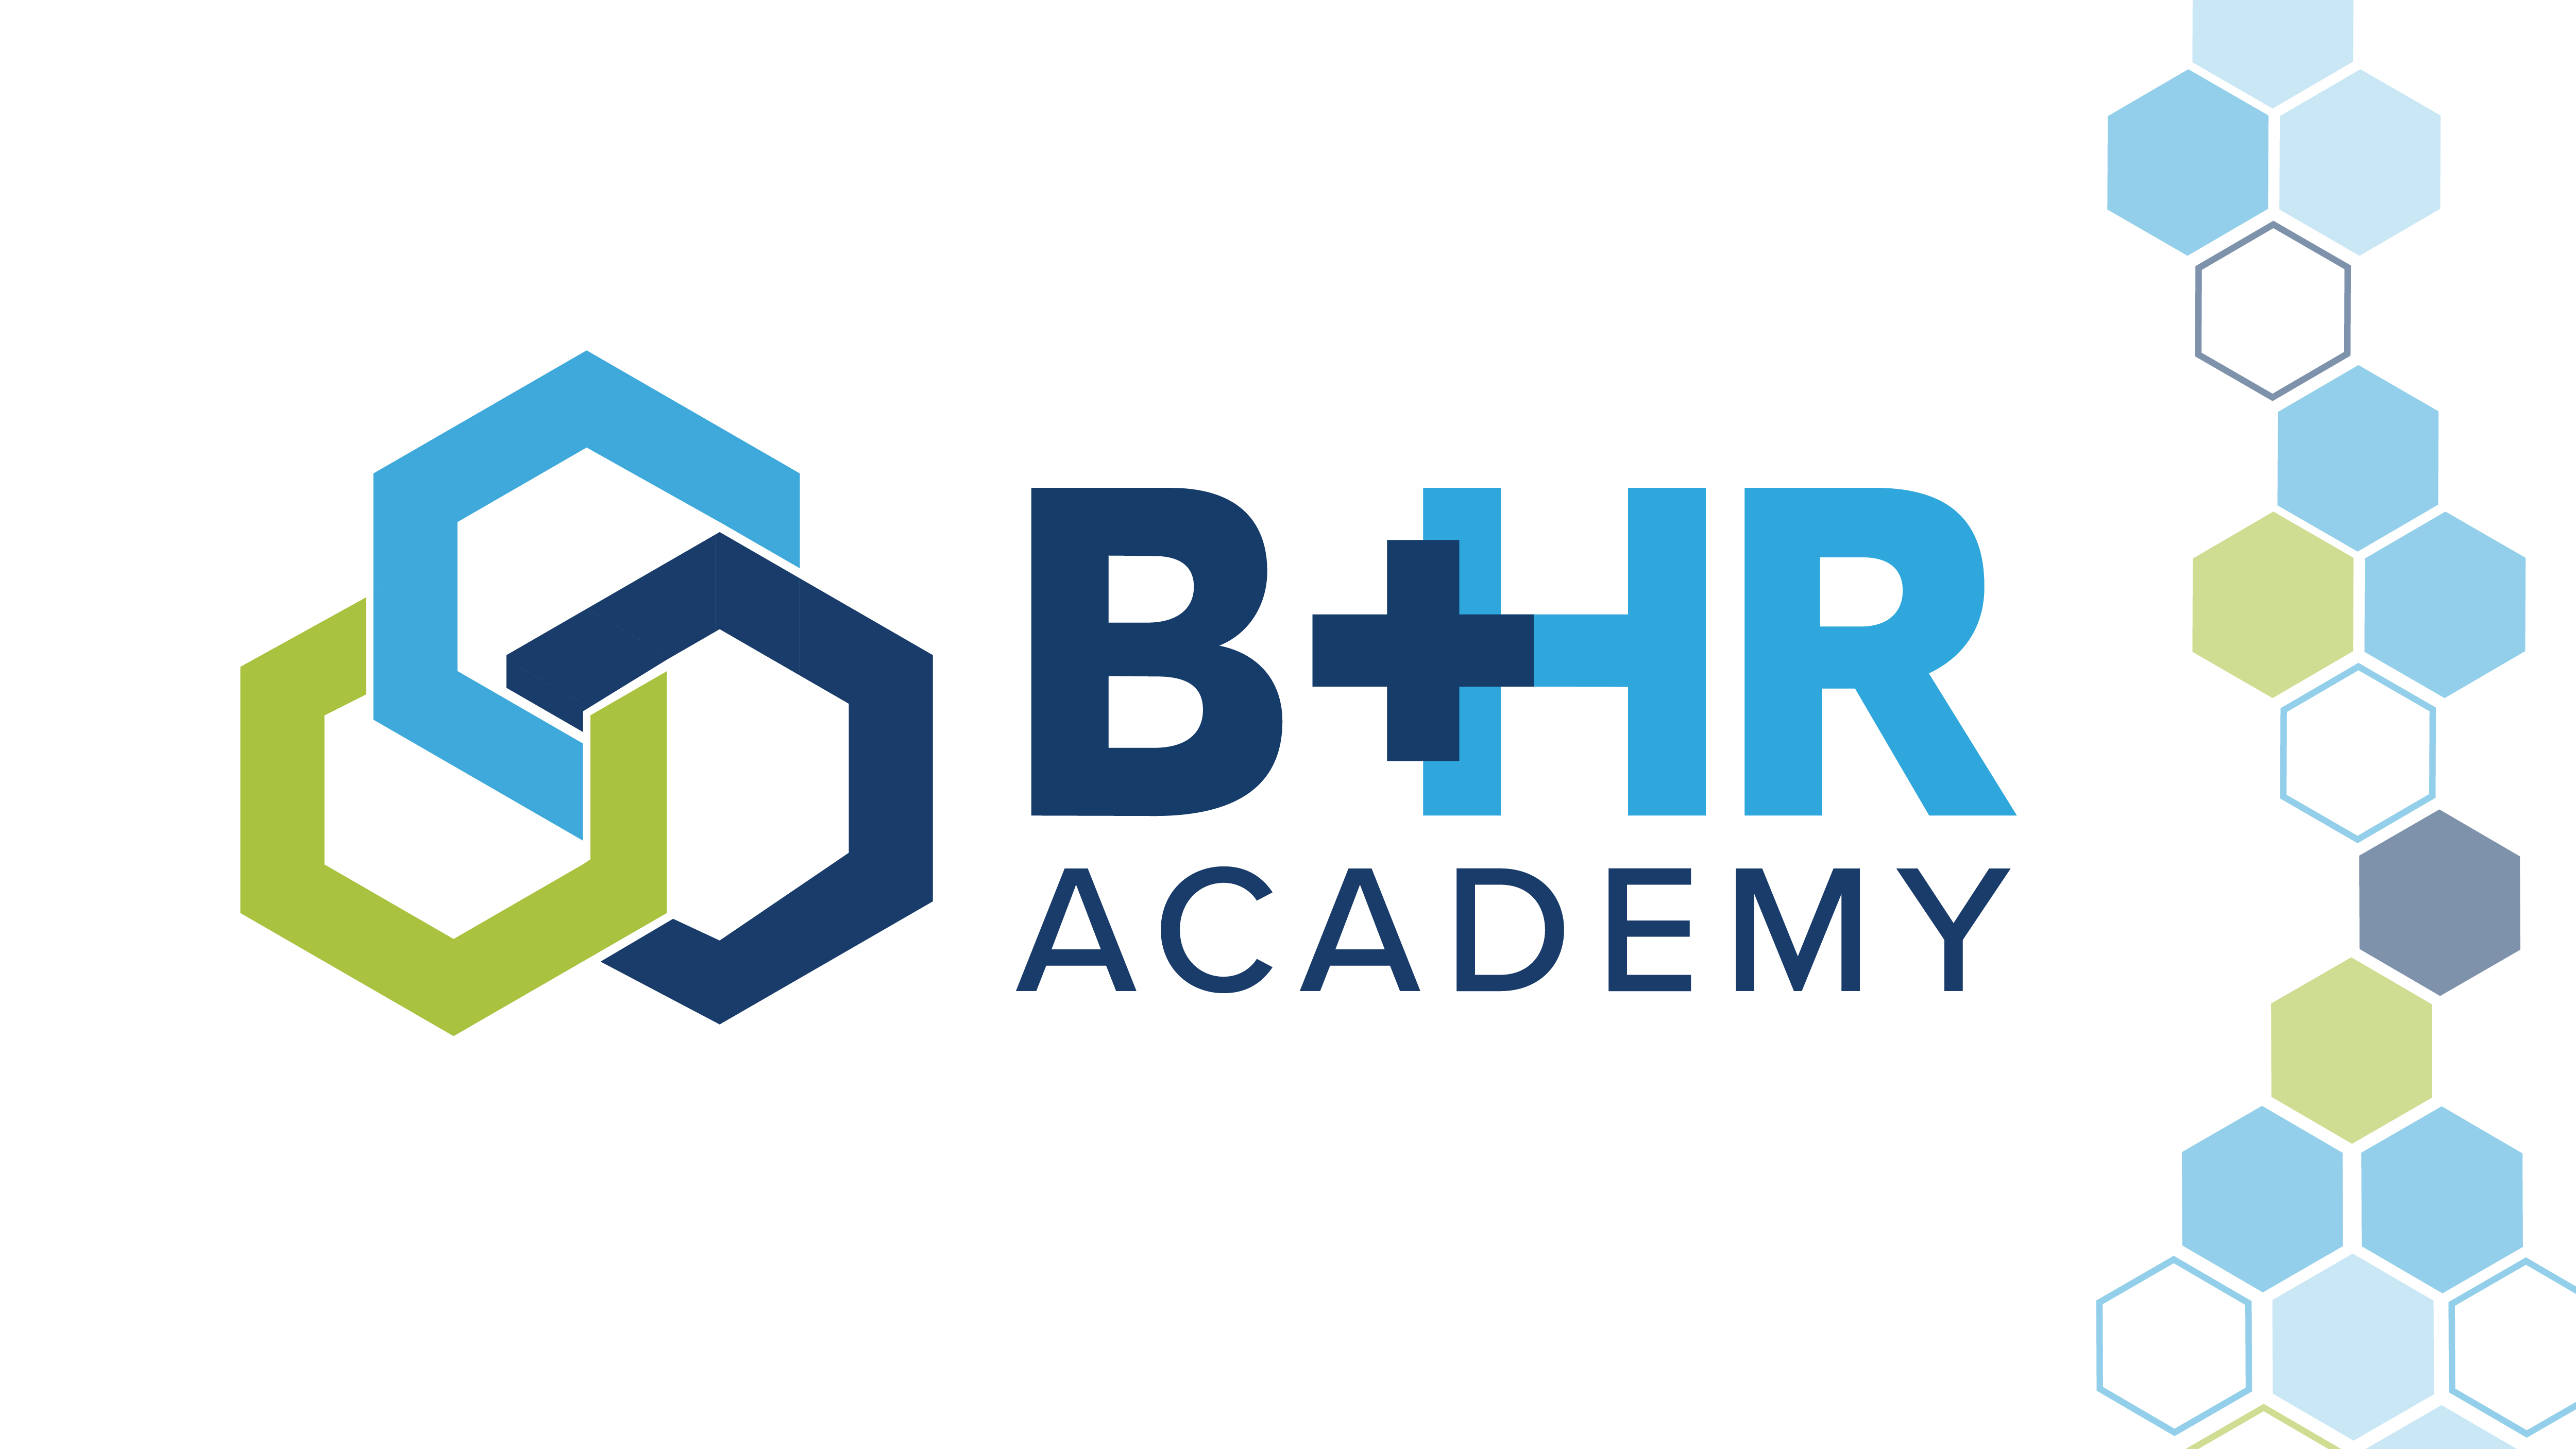 B+HR Academy logo